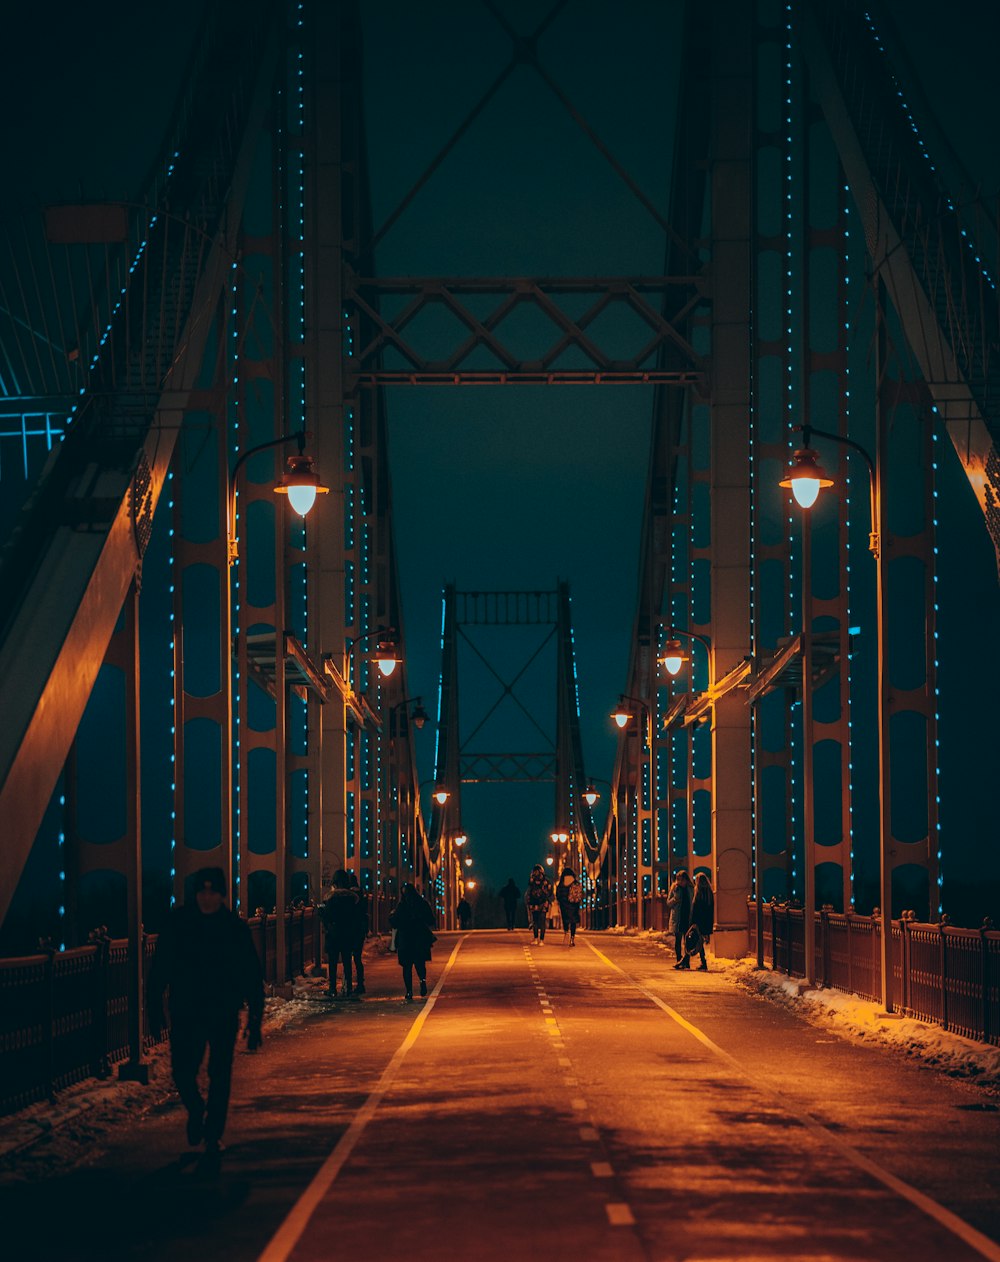 persone che camminano sul ponte durante la notte